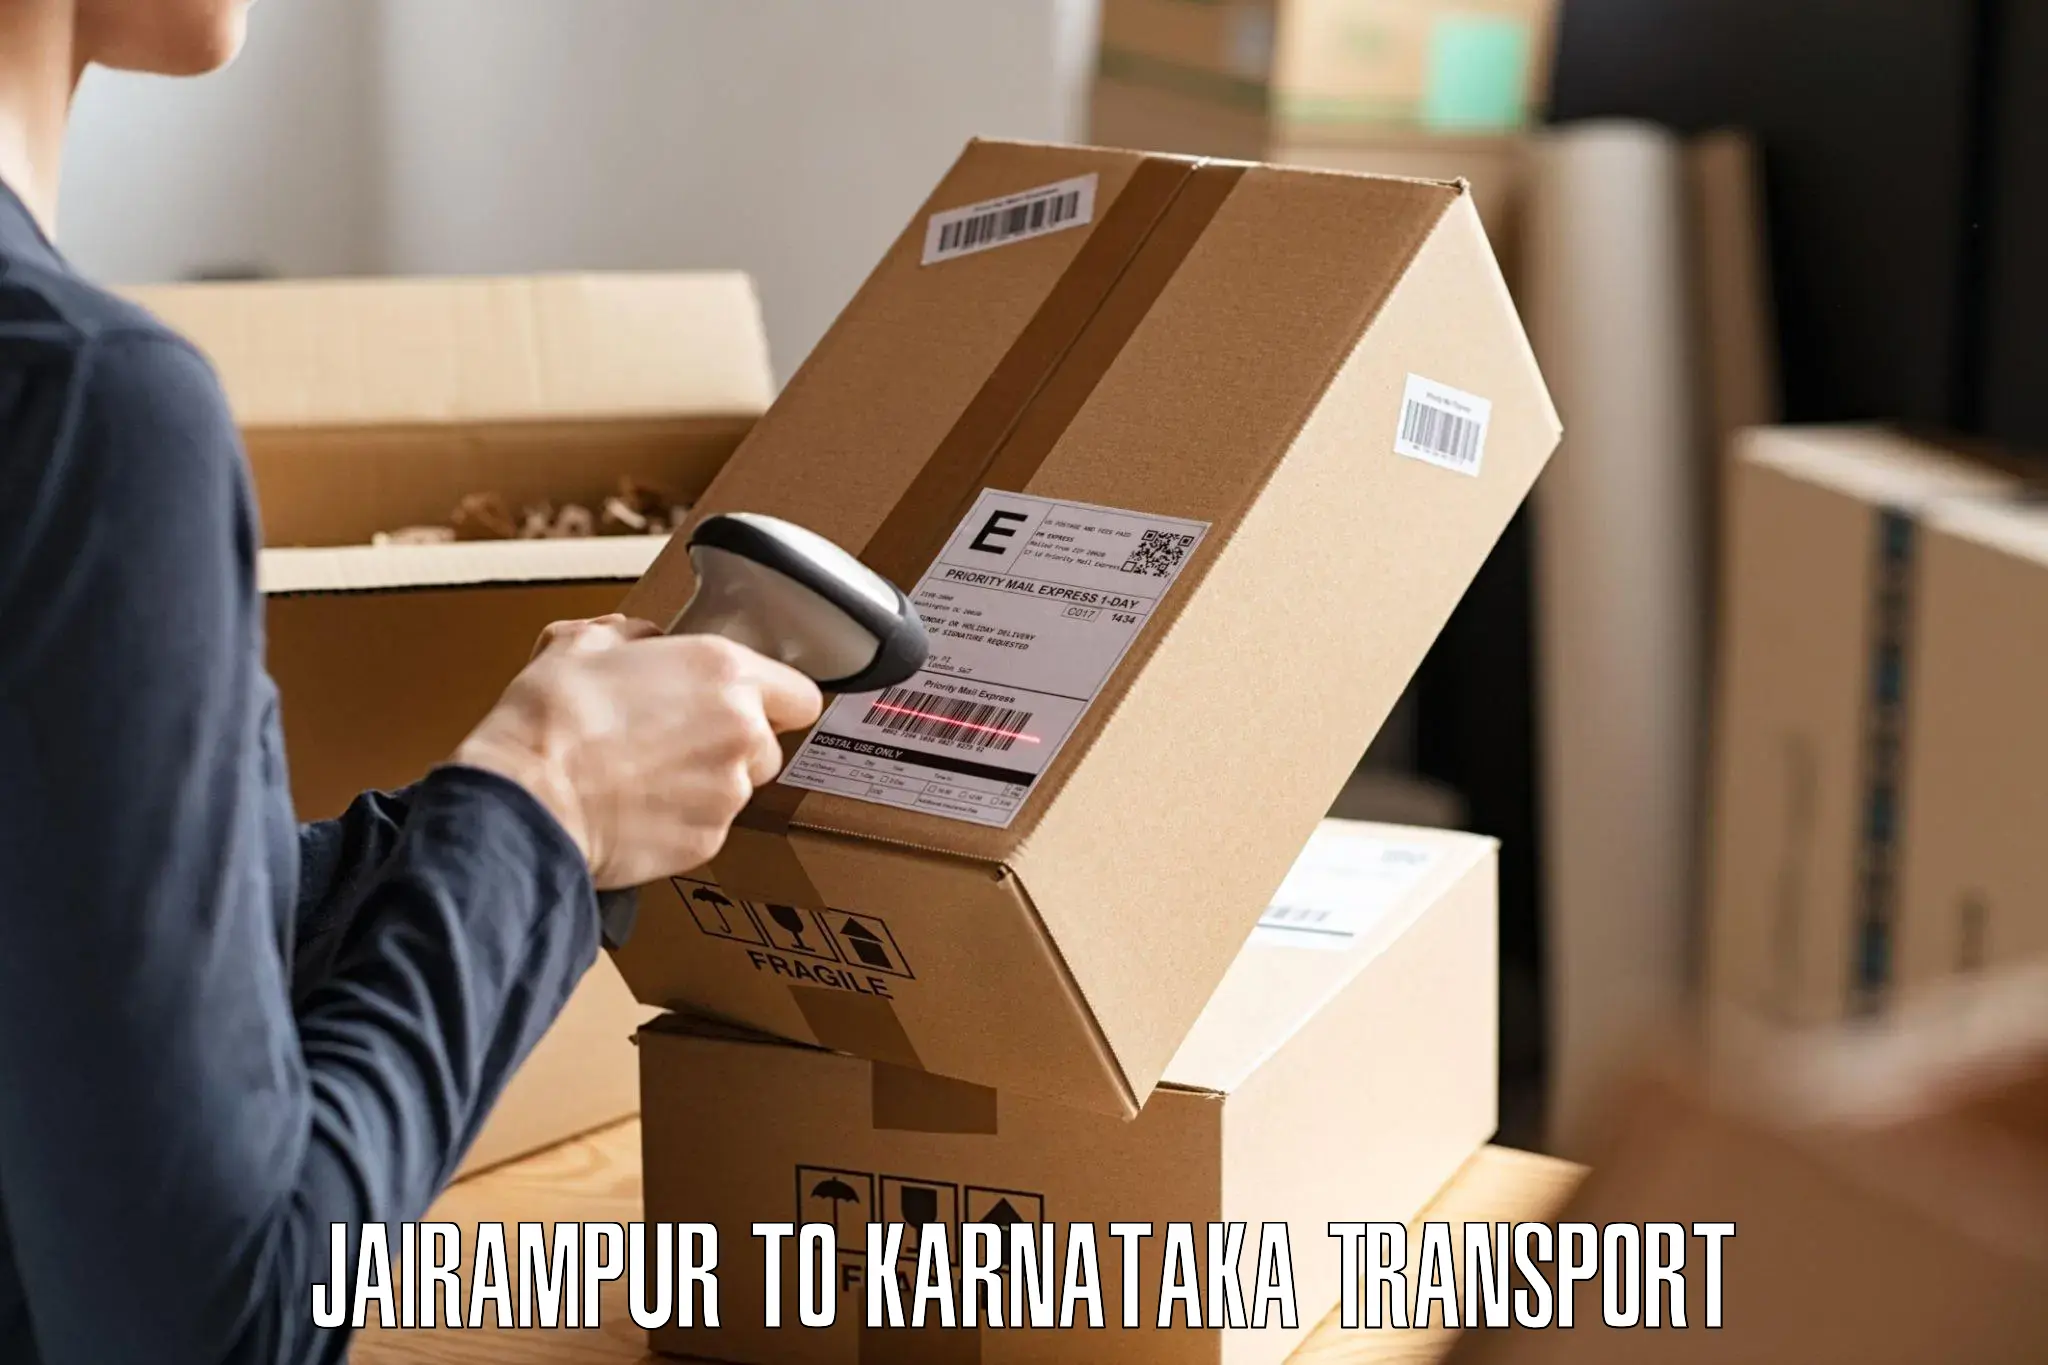 Furniture transport service in Jairampur to Bangarapet